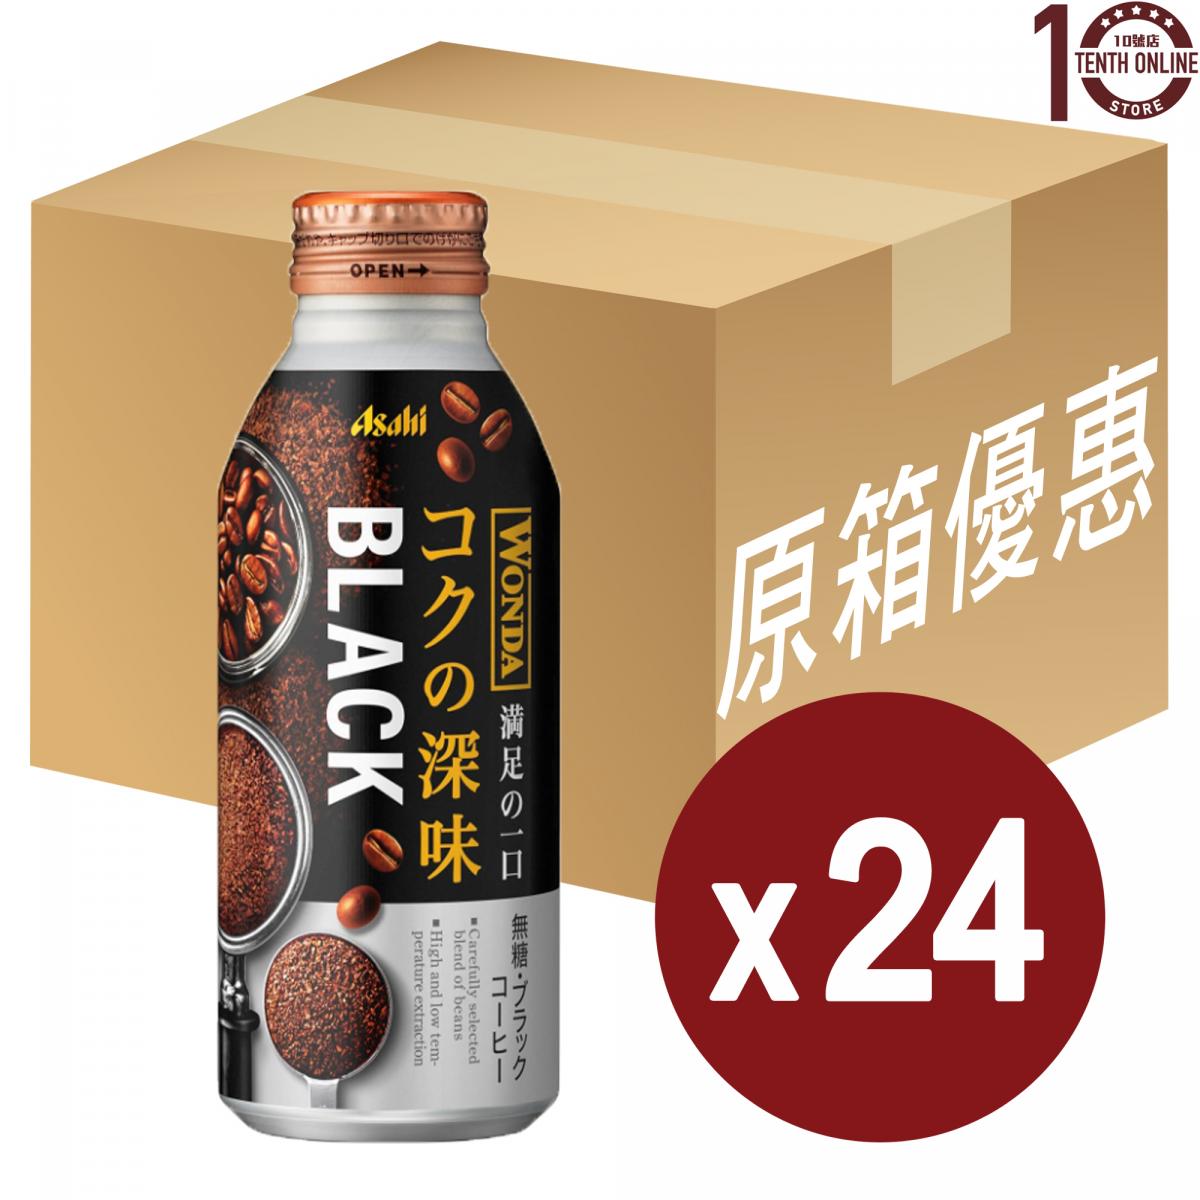 Asahi [日本咖啡]-Wonda 深味 極濃無糖黑咖啡(樽裝) - 原箱 400克 (新舊包裝隨機發送)